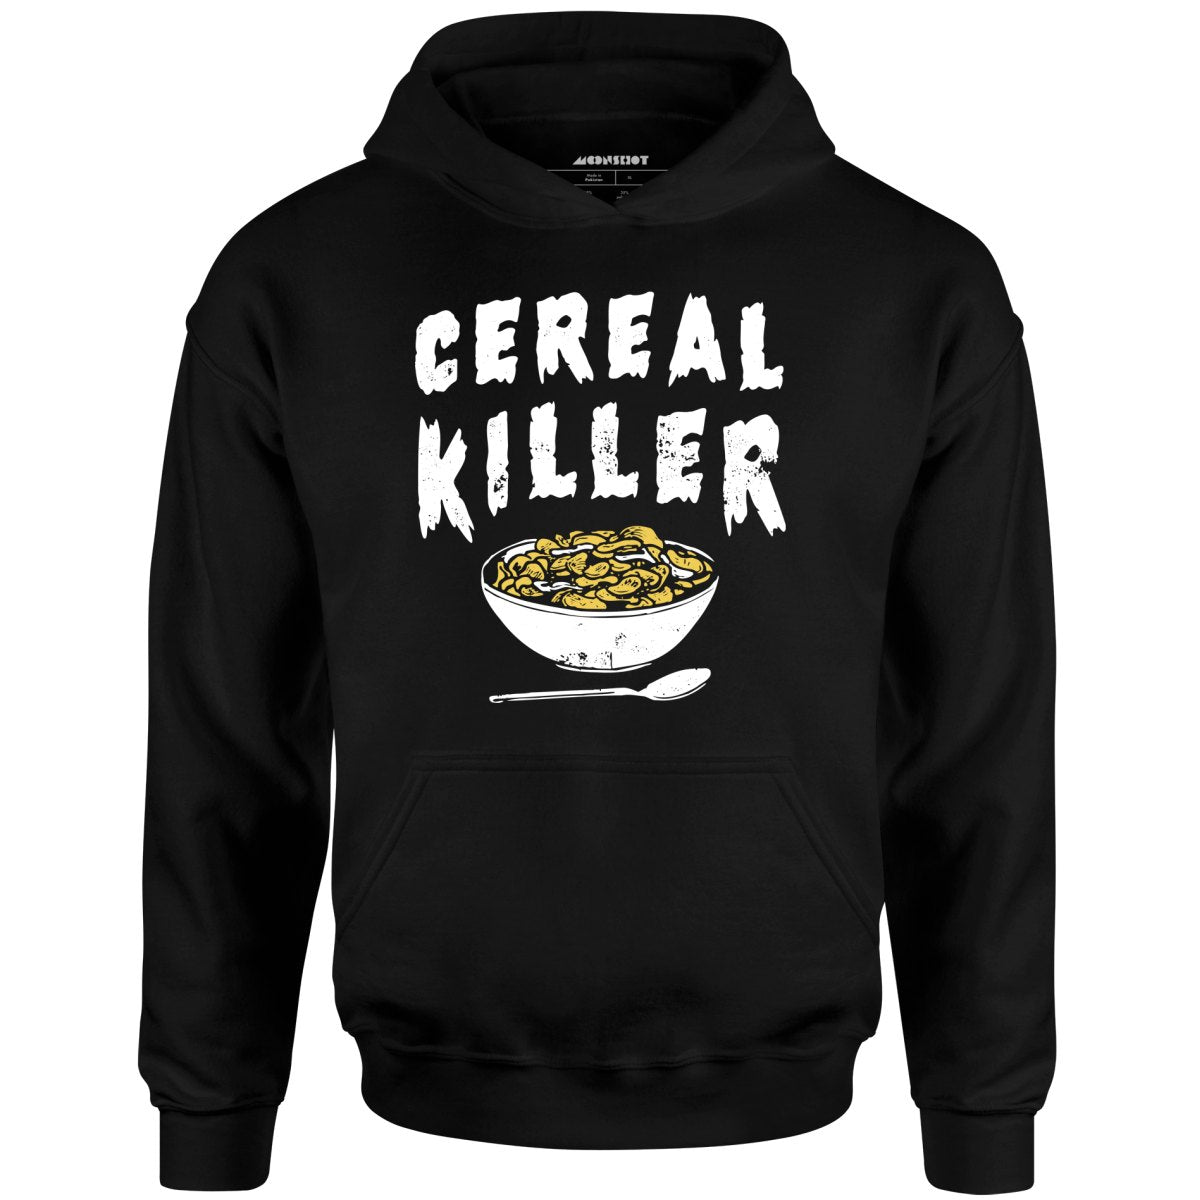 Cereal Killer - Unisex Hoodie